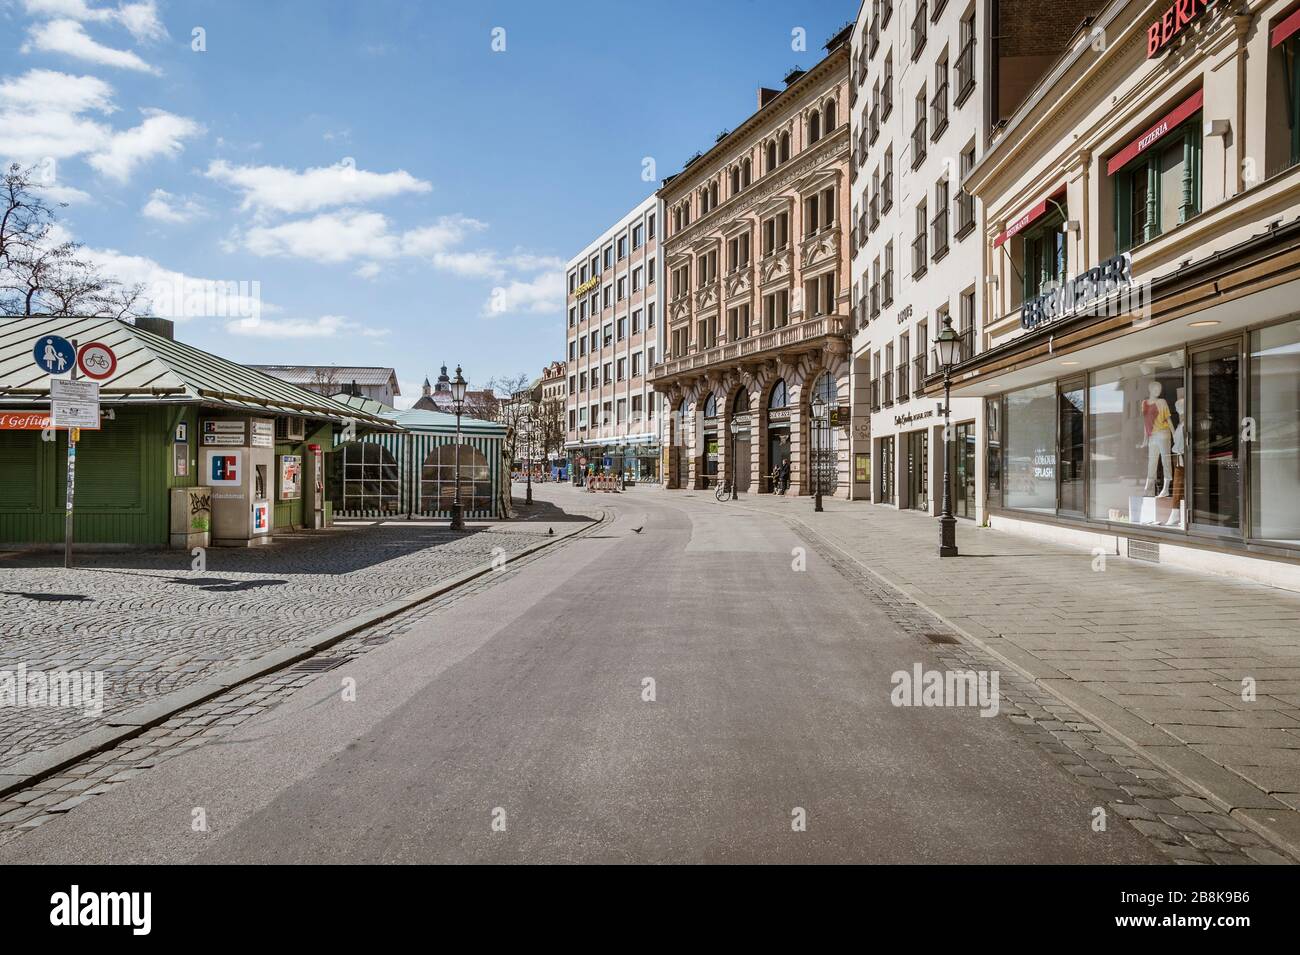 Bavière-Munich-Allemagne, 22. März 2020: Des rues vides au Viktualienmarkt de Munich en raison de l'arrêt dû au virus corona Banque D'Images